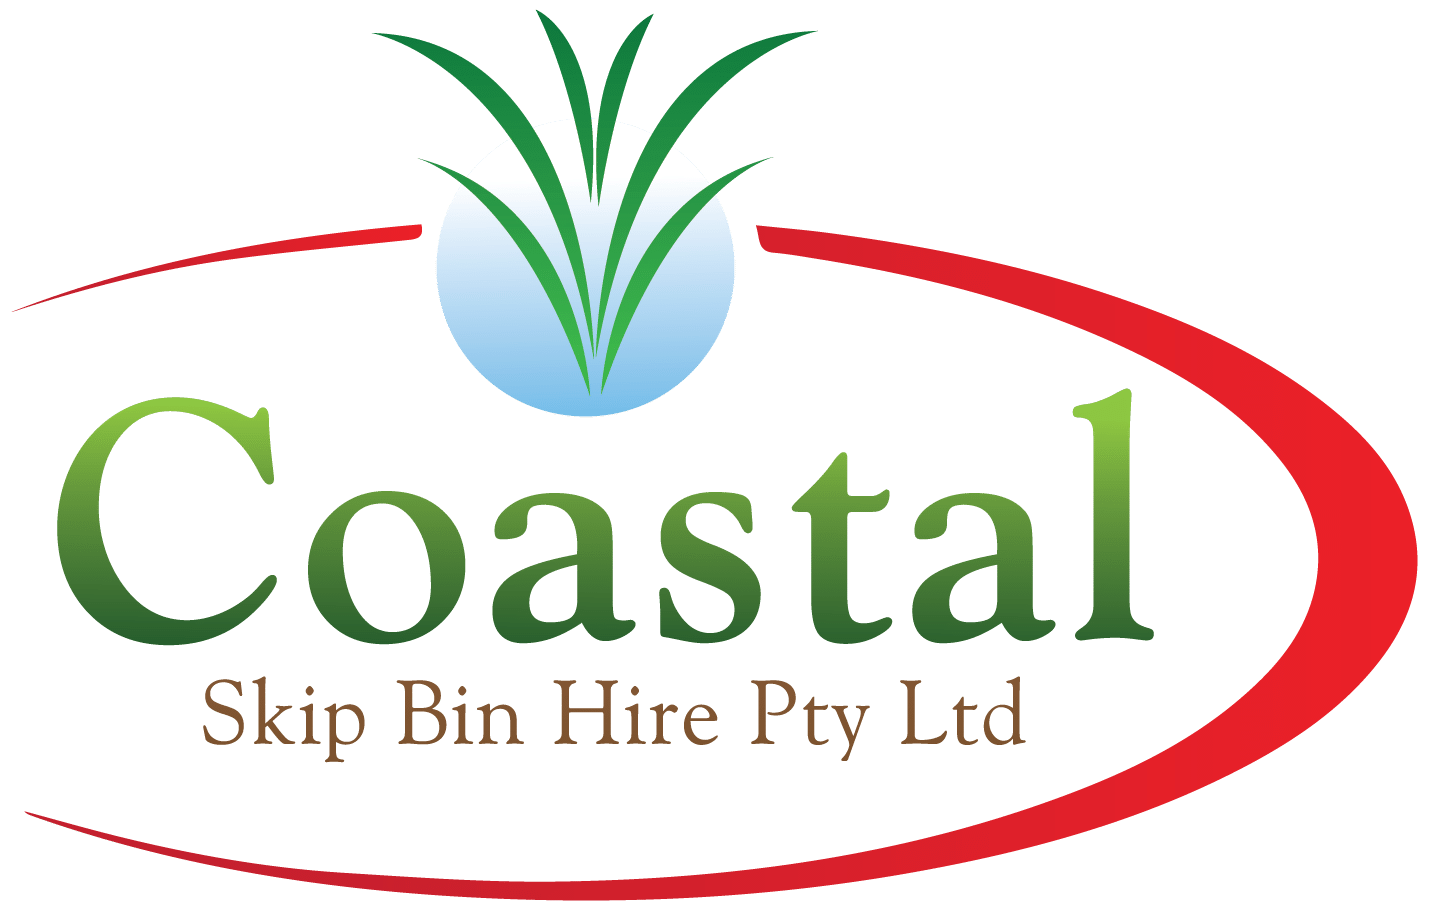 Rent a Skip Bin from Coastal Skip Bin Hire Pty Ltd